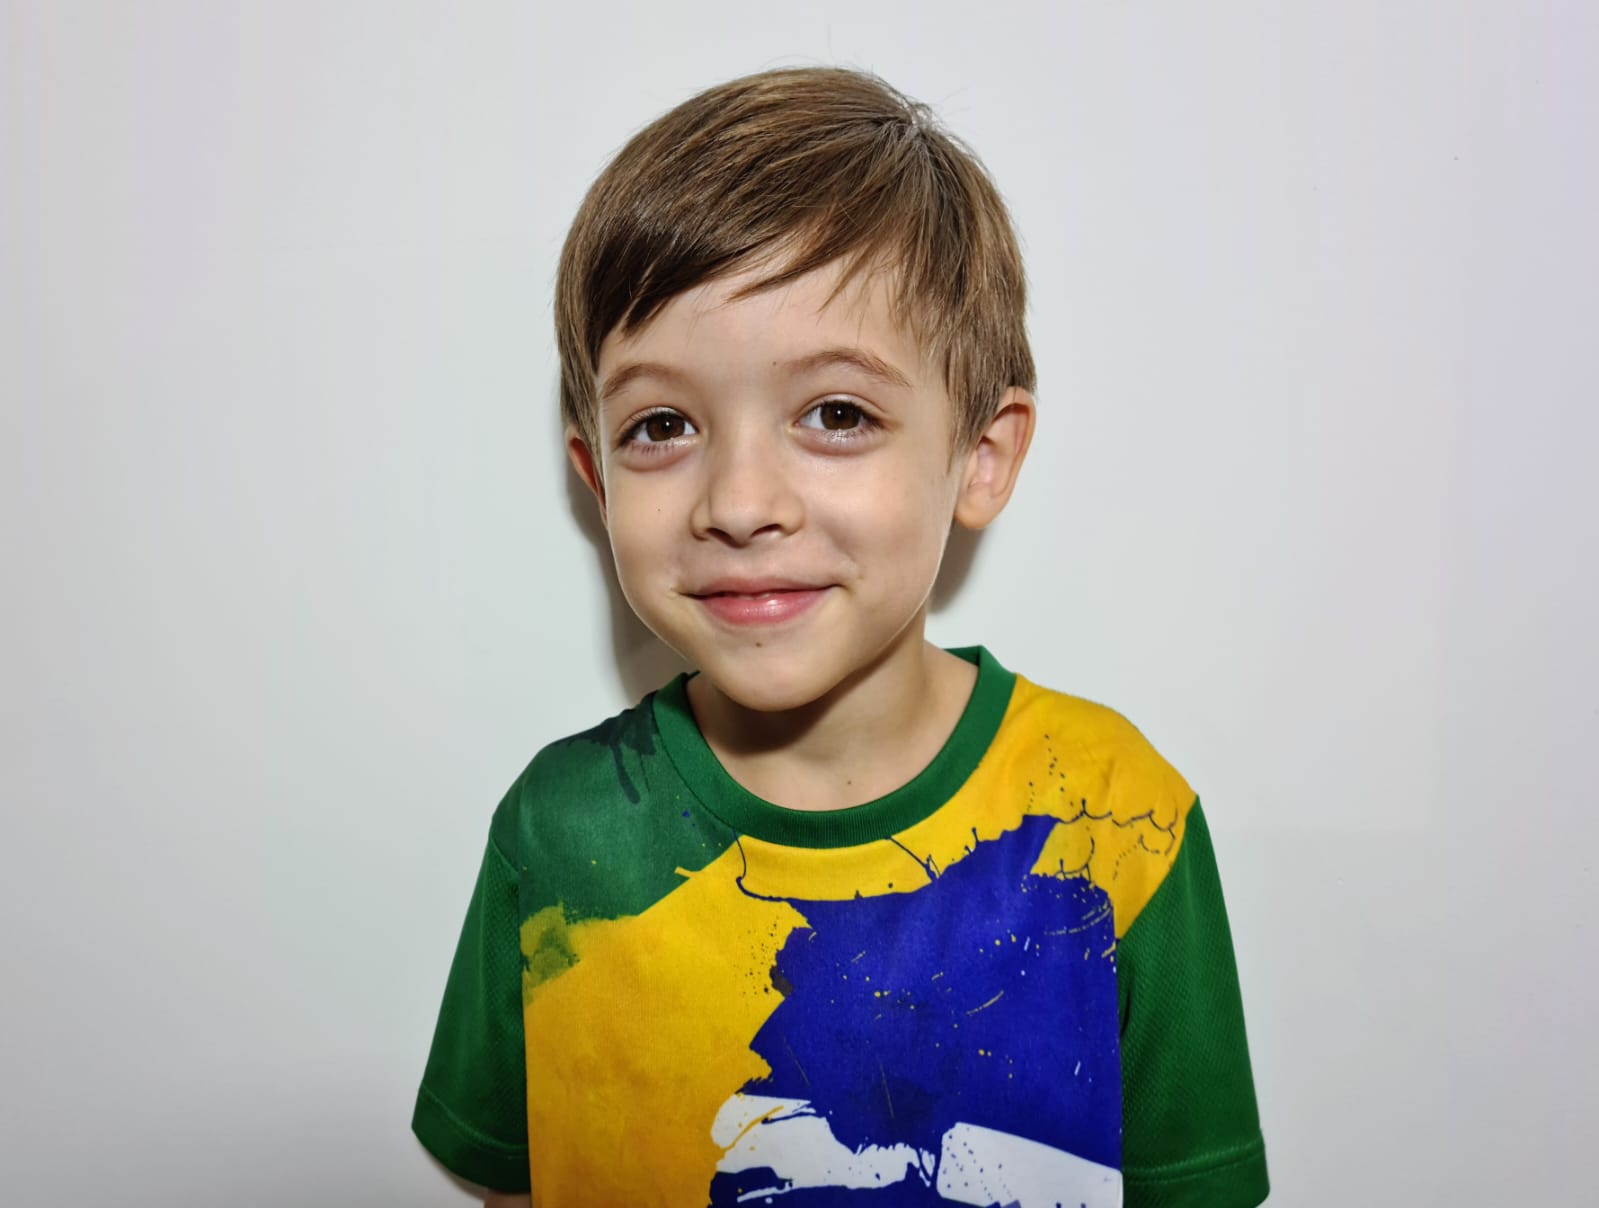 Theo Costa Ribeiro, 5 anos, é o mais jovem brasileiro a entrar em sociedade de pessoas de alto QI